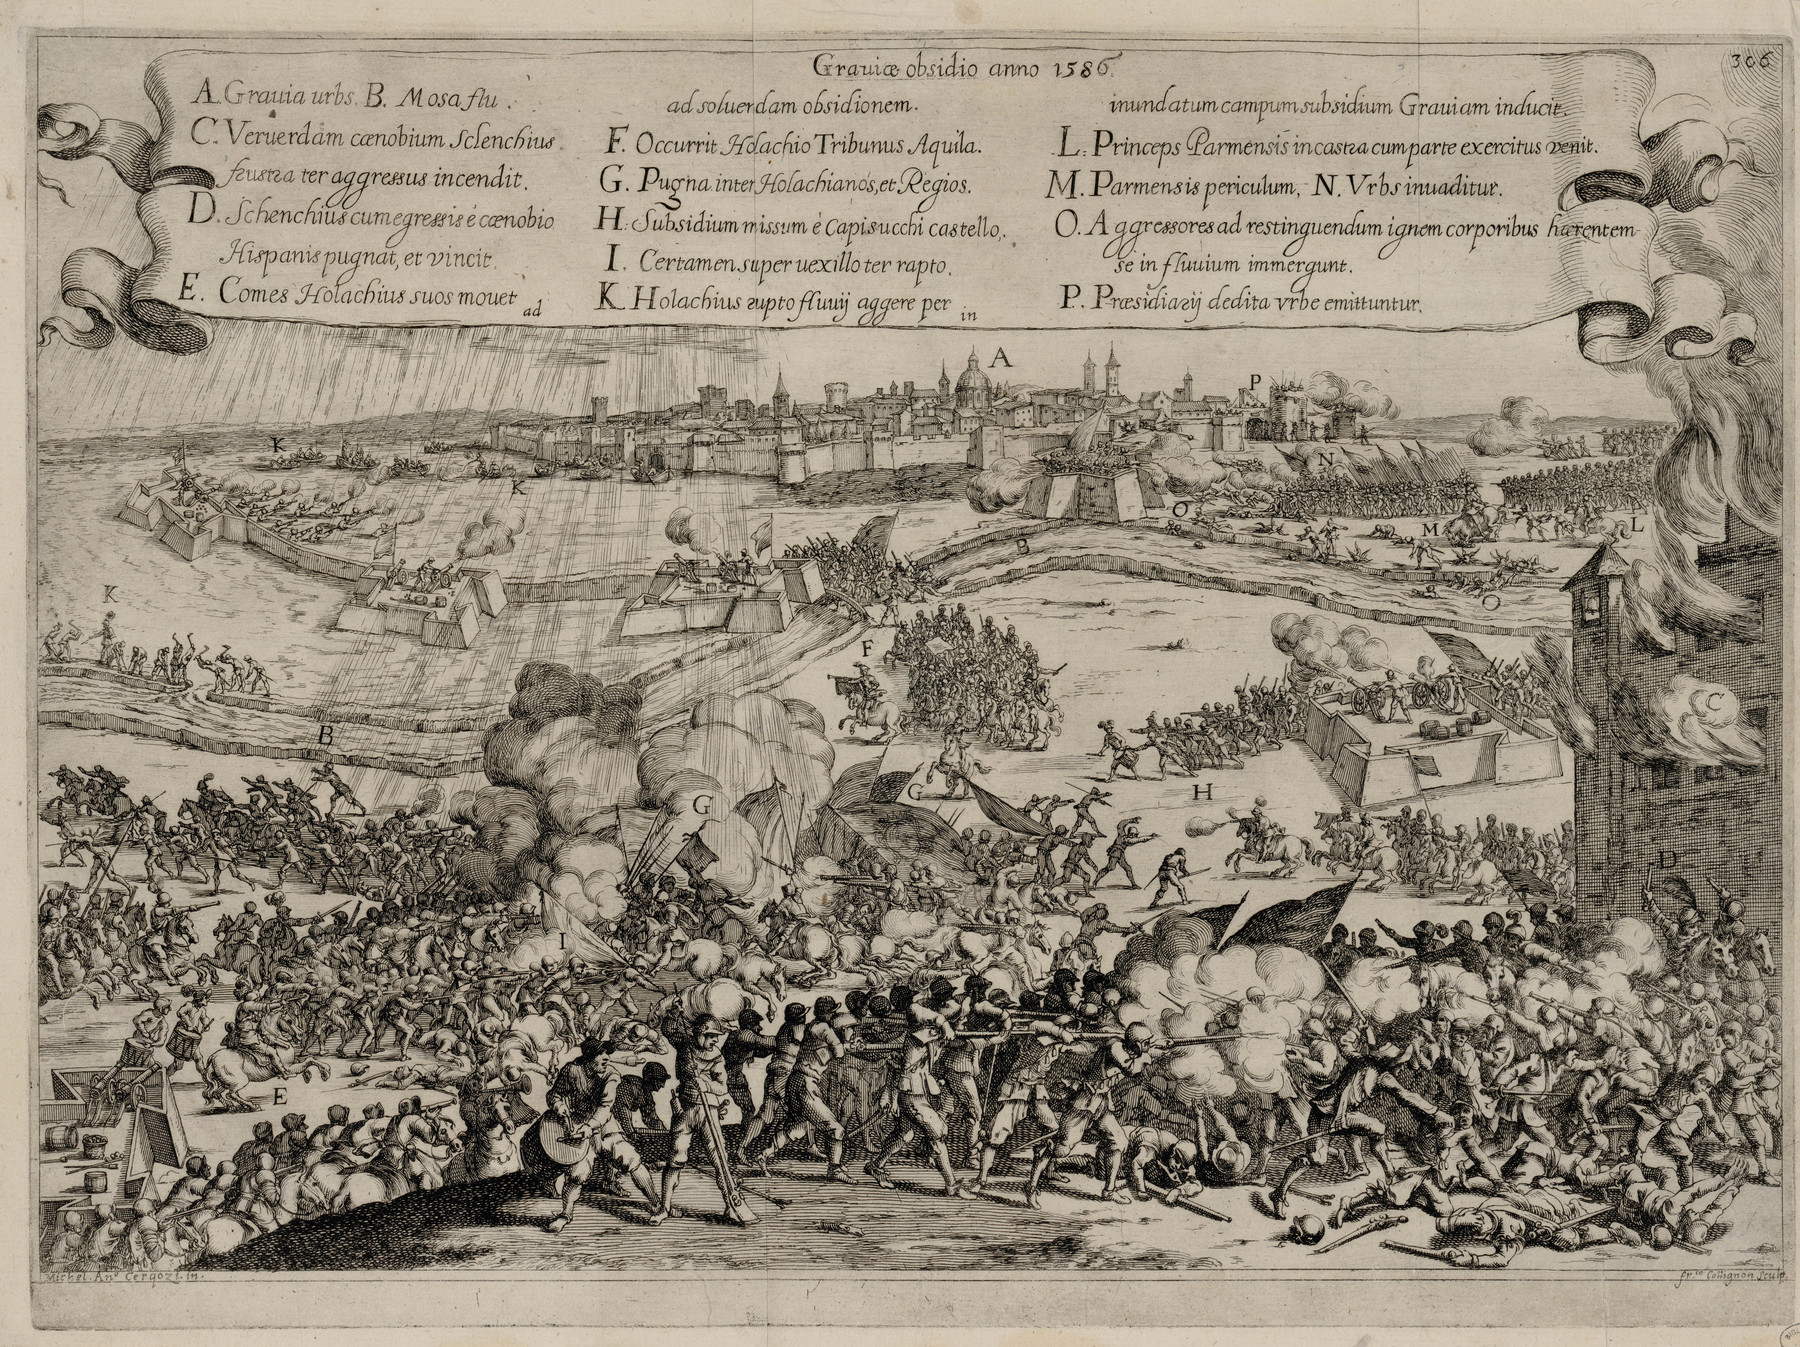 Contenu du Le siège de Grave en 1586